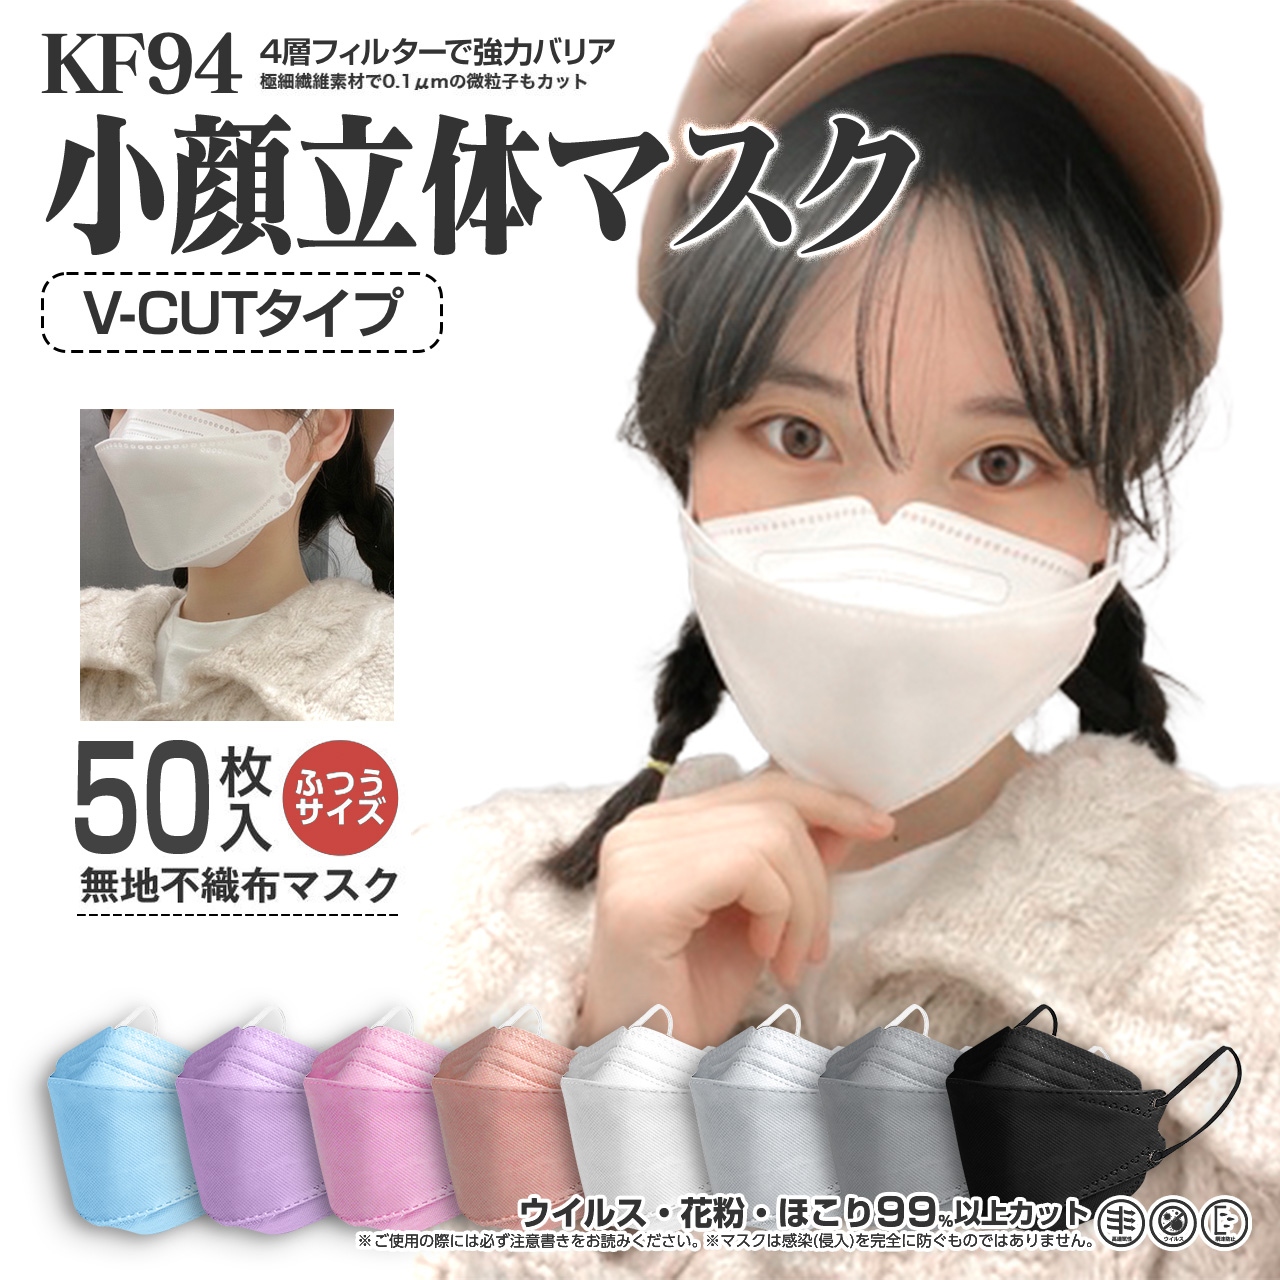 オンラインショッピング 3D立体マスク ホワイト×グレー 40枚 花粉 不織布 韓国 小顔 白 お得